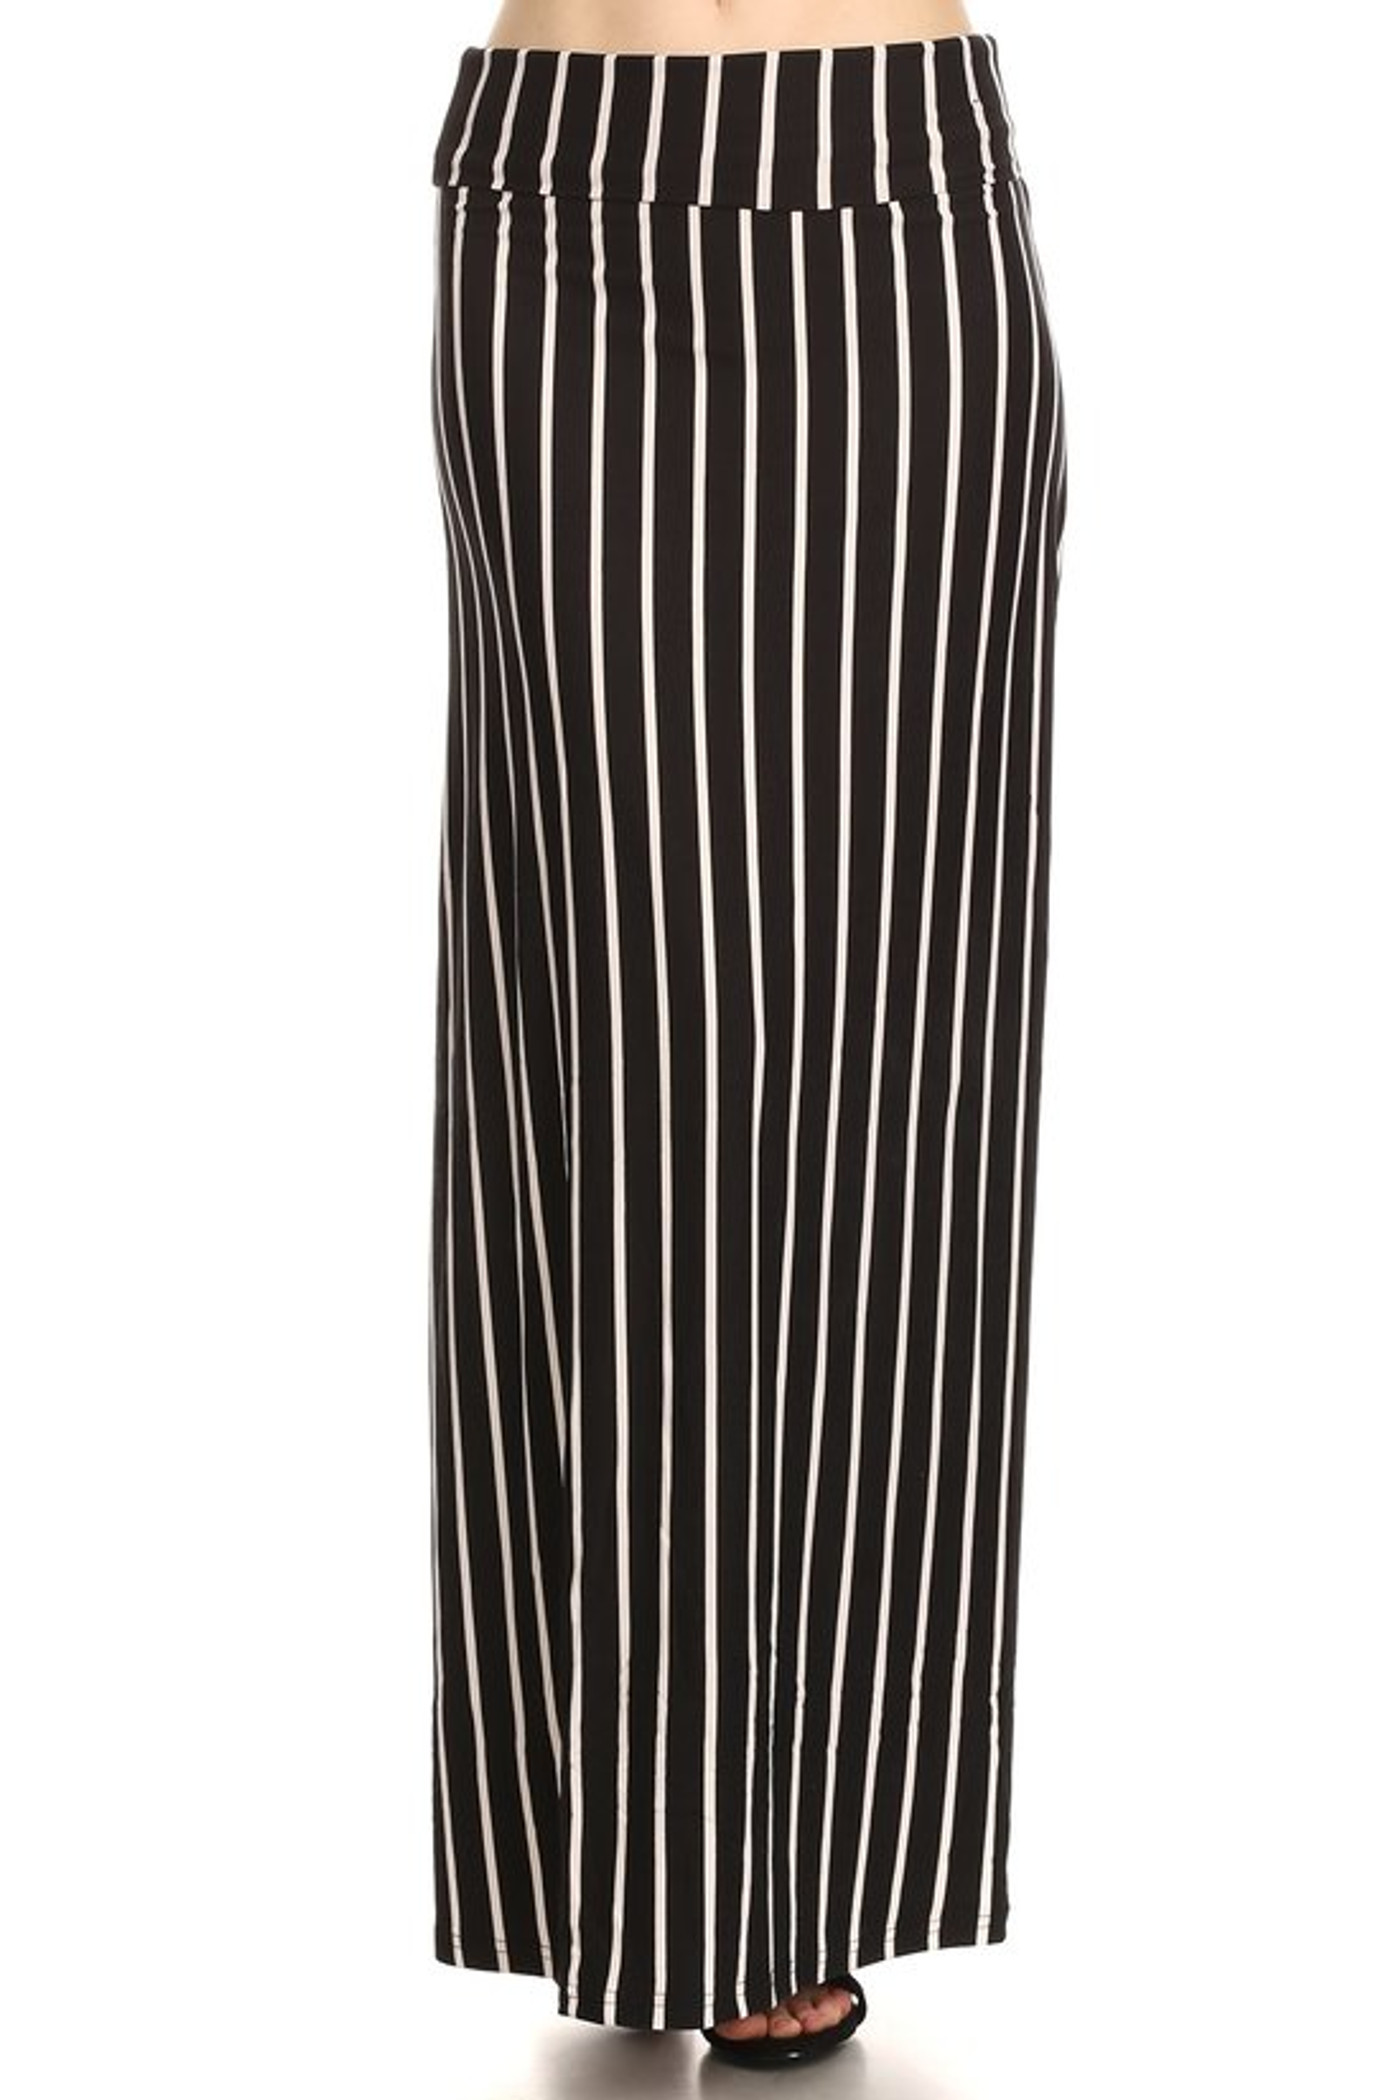 Brushed Black Pinstripe Maxi Skirt